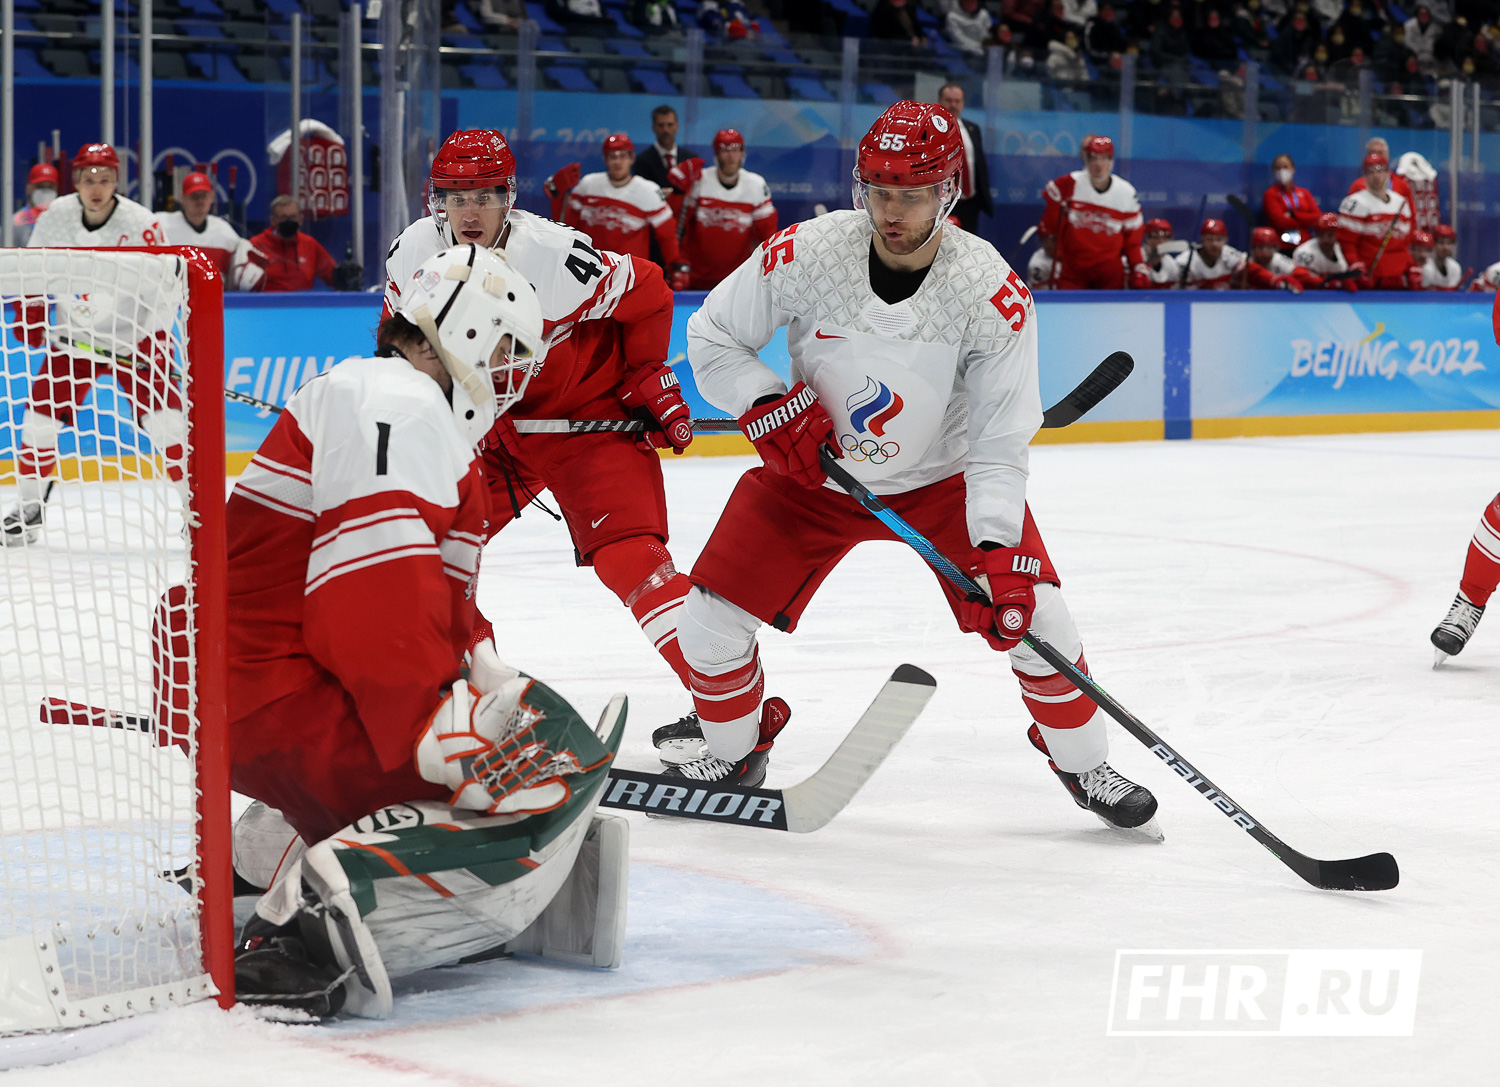 Хоккей на программе матч. Олимпийские игры 2022 хоккей. Российский хоккей на Олимпиаде 2022.